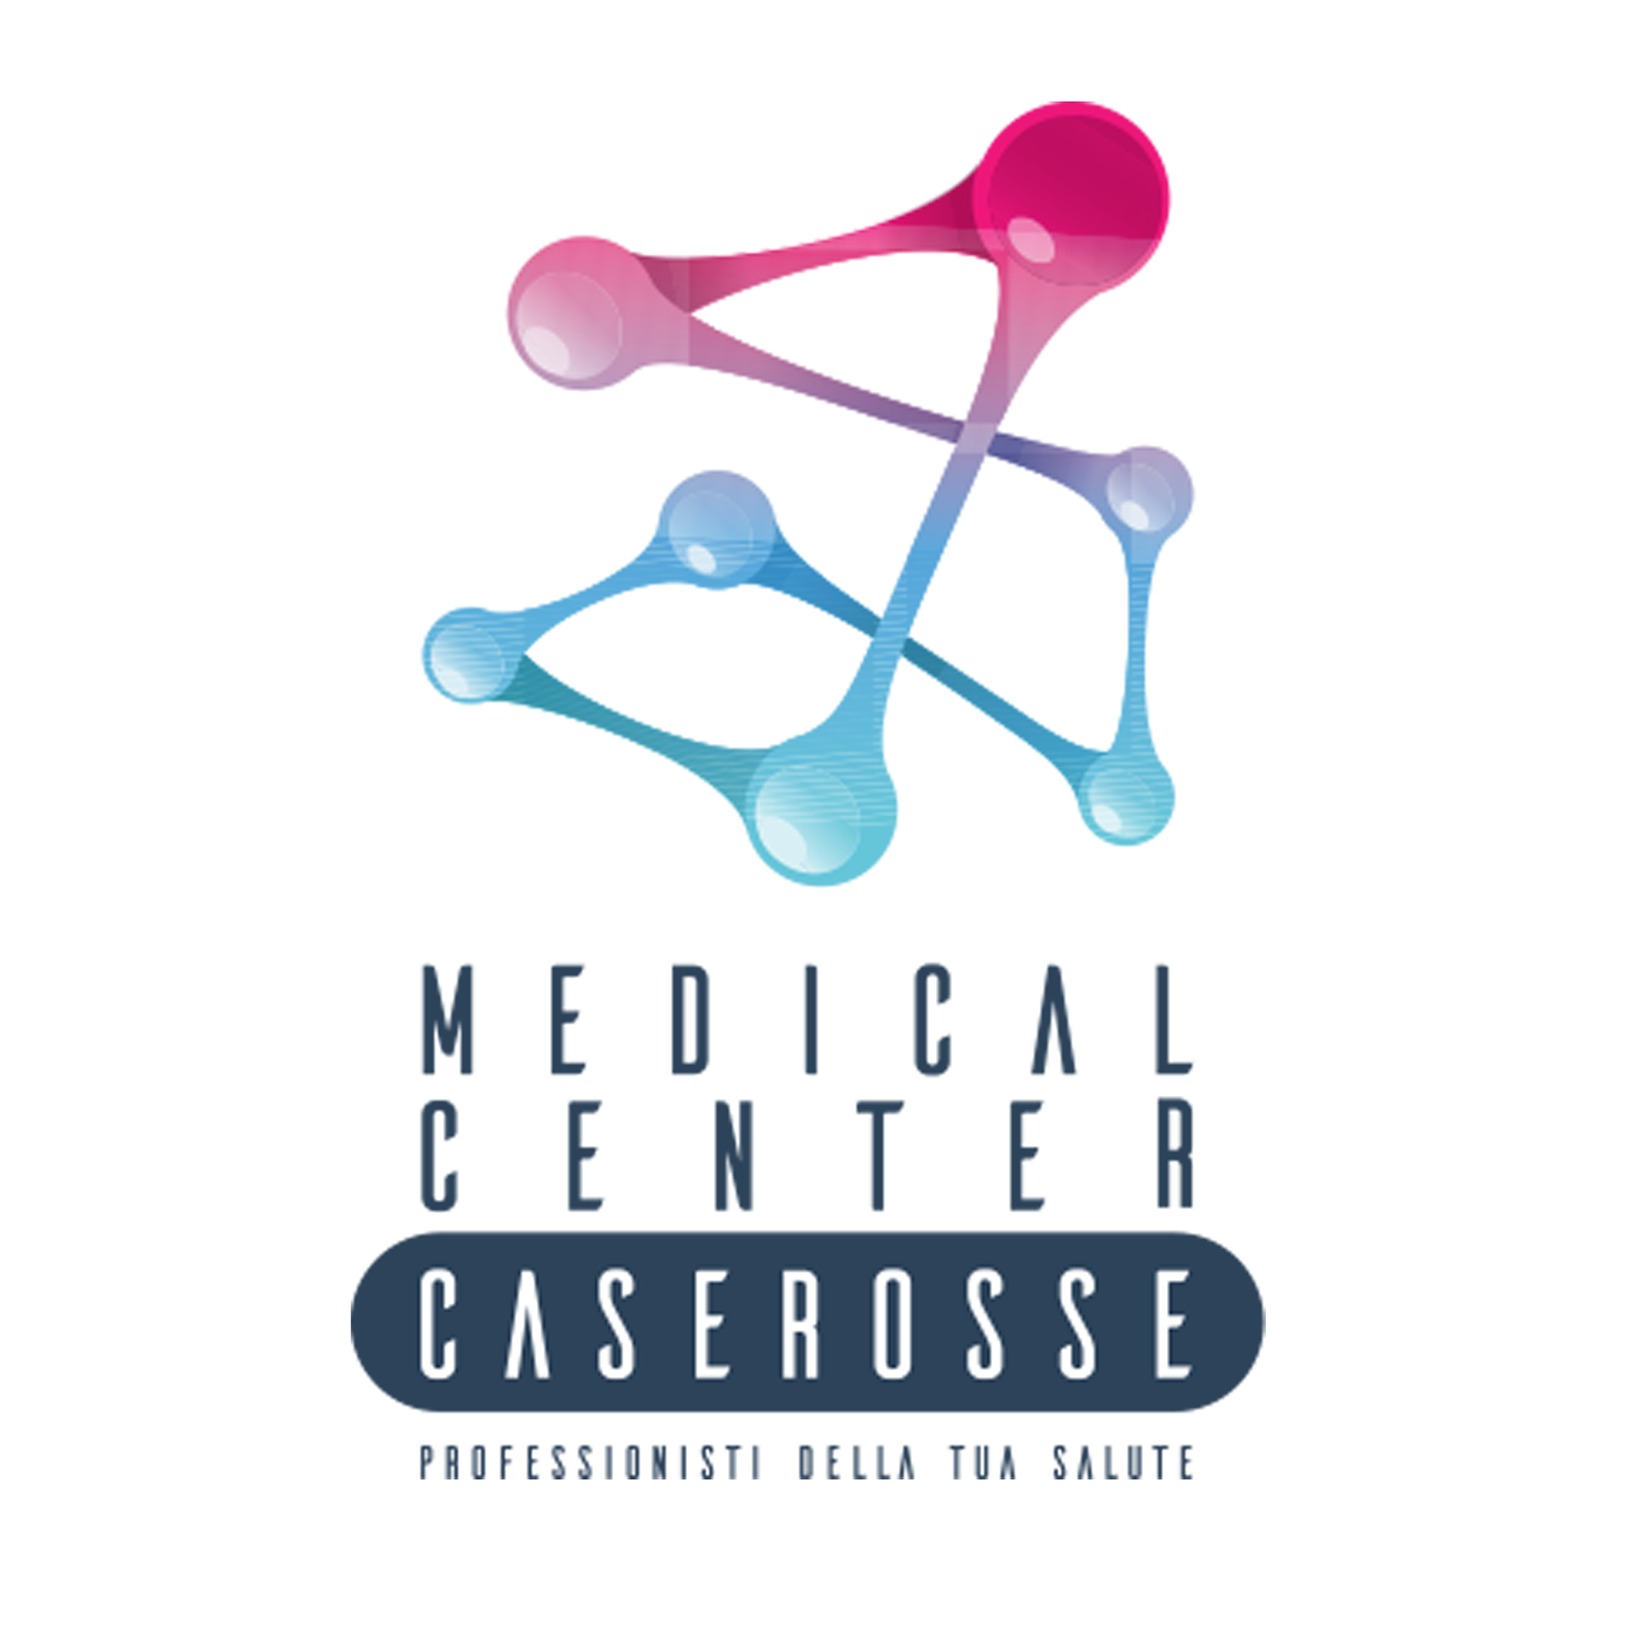 Medical Center Caserosse